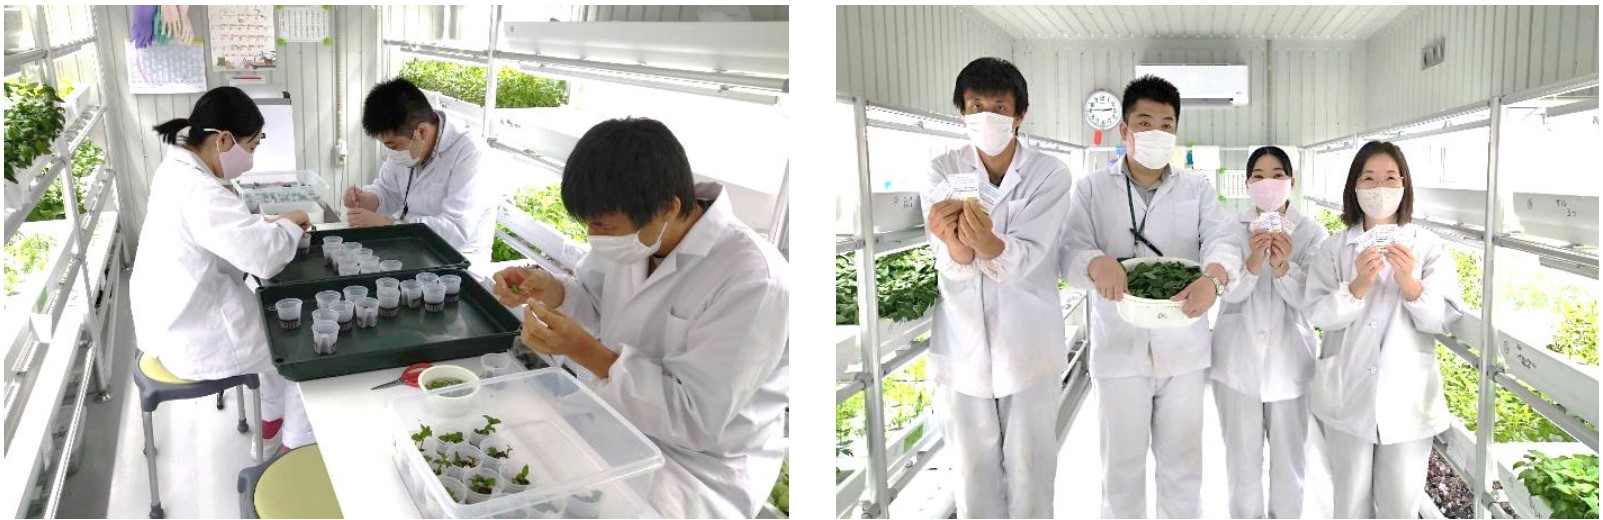 屋内農園型障がい者雇用支援サービス「IBUKI」、大阪府では４拠点目となる「IBUKI OSAKA KADOMA FARM」を10月1日開設のサブ画像3_大和リース社員の働く様子